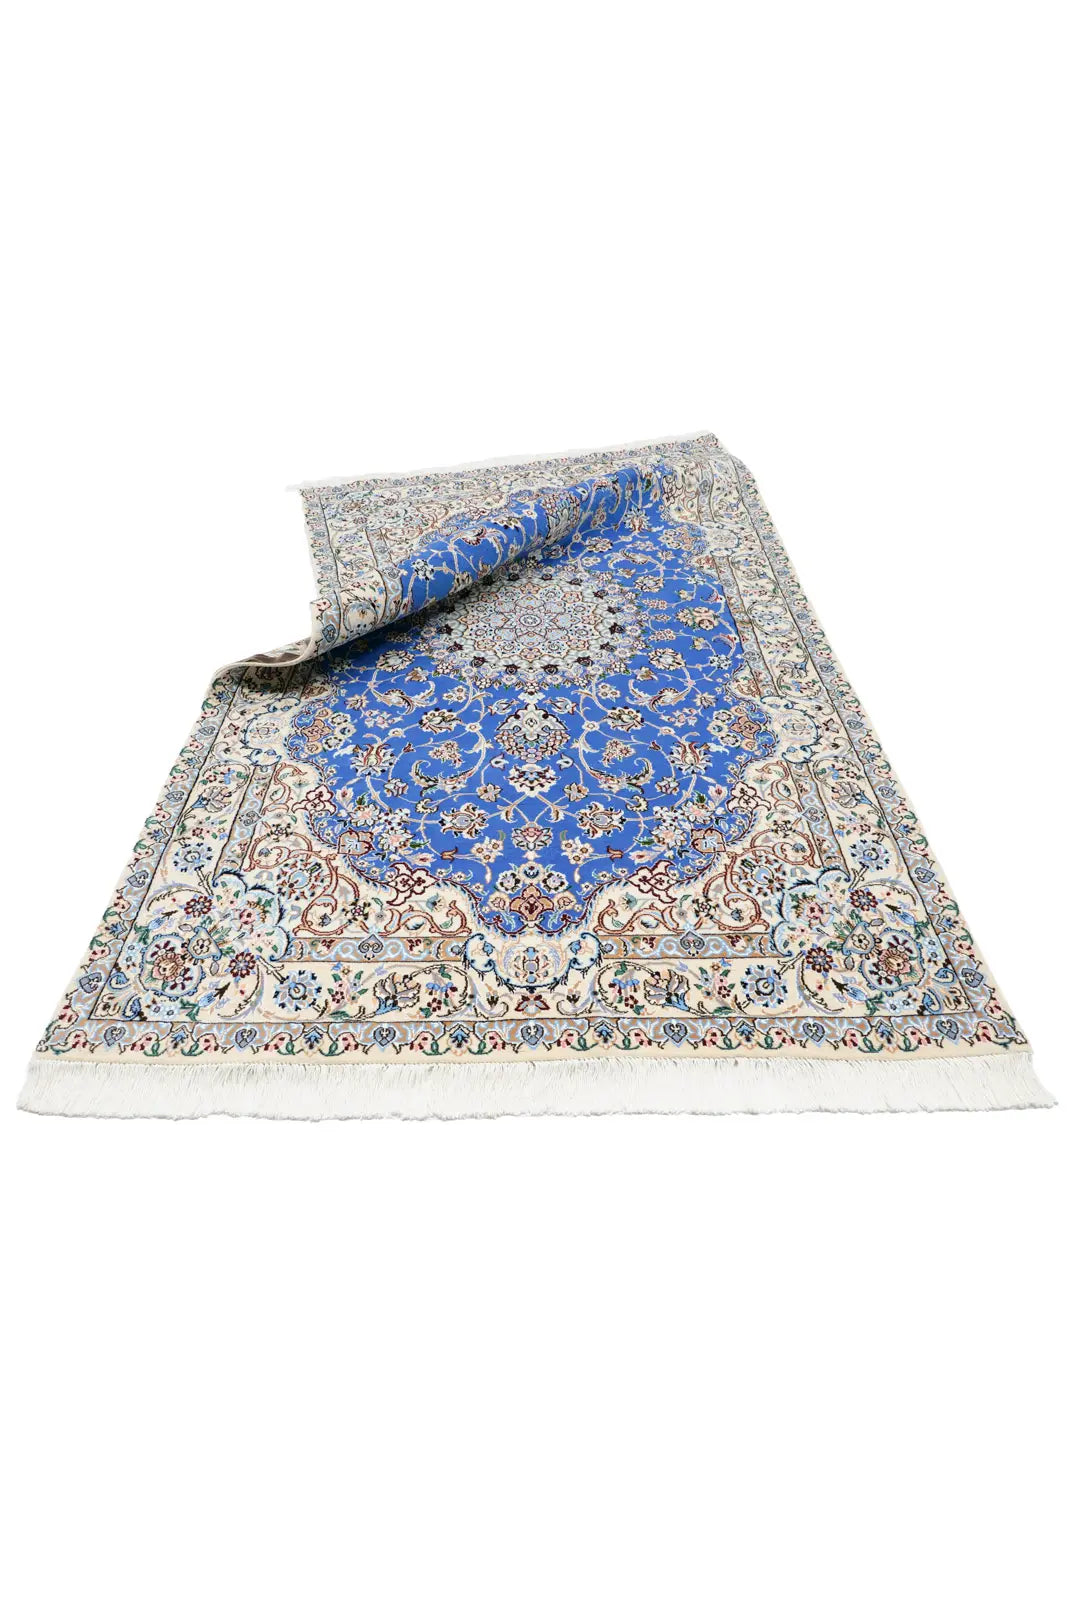 ナイン産 ペルシャ絨毯(150x245cm)リビング 青【絨毯専門店】 – SATHI RUGS